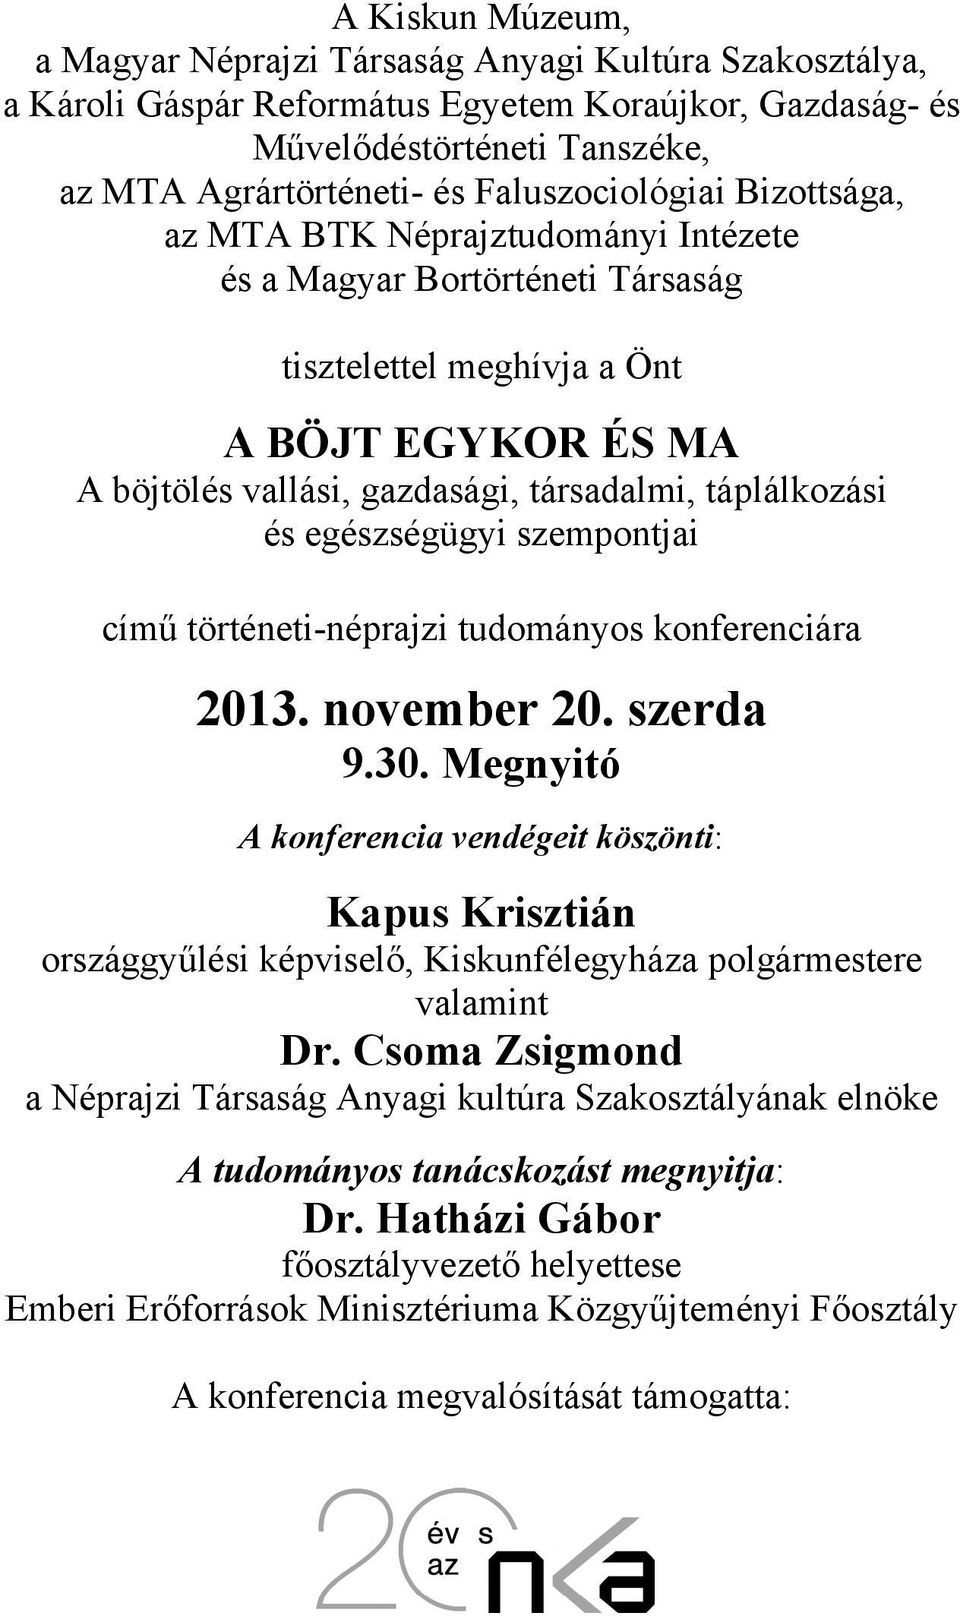 táplálkozási és egészségügyi szempontjai című történeti-néprajzi tudományos konferenciára 2013. november 20. szerda 9.30.